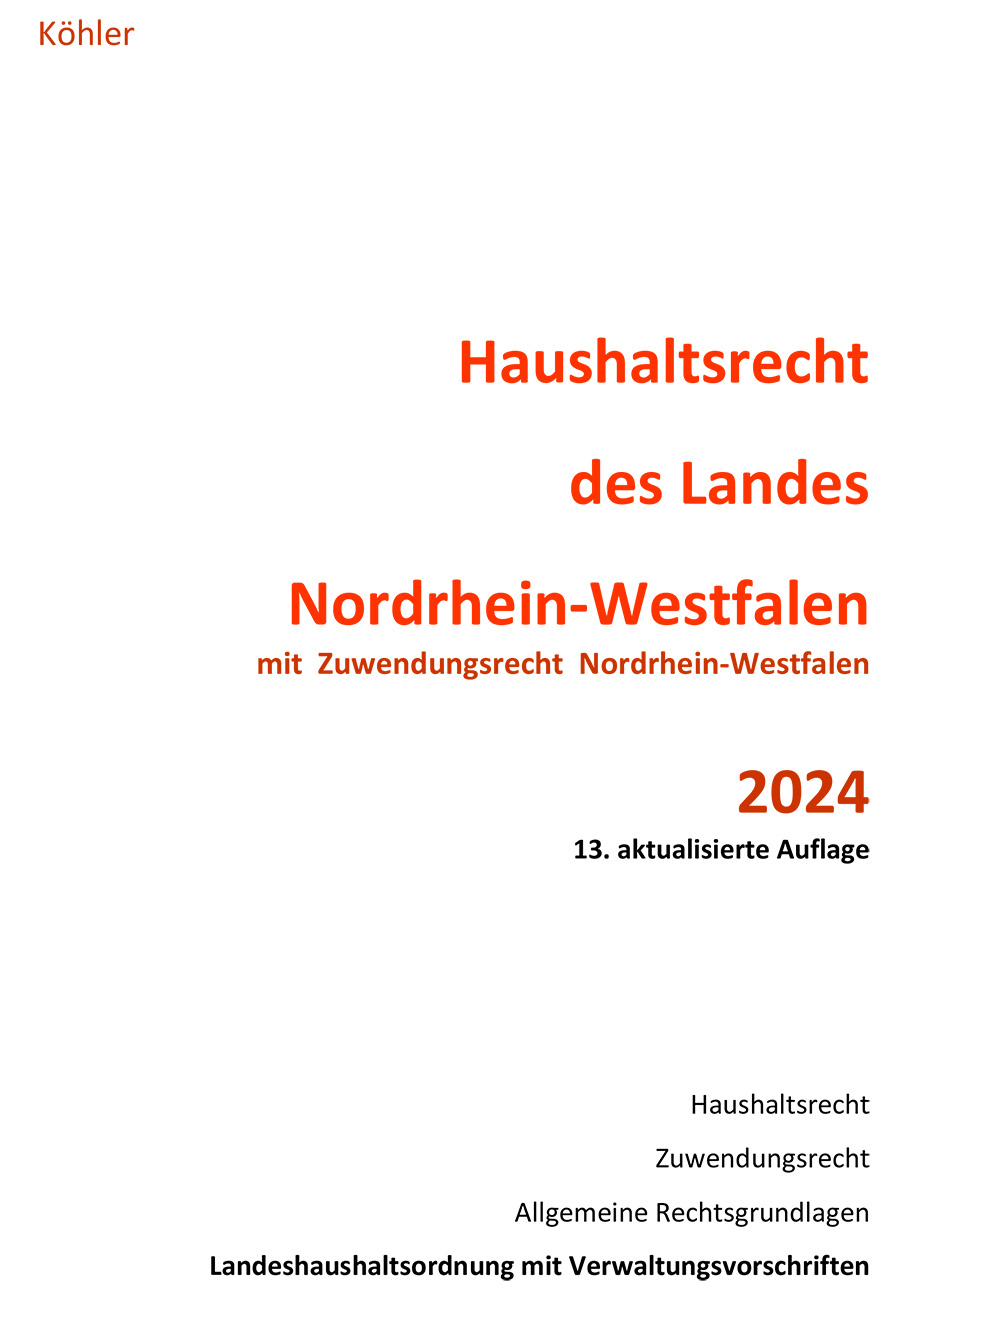 Haushaltsrecht des Landes Nordrhein-Westfalen